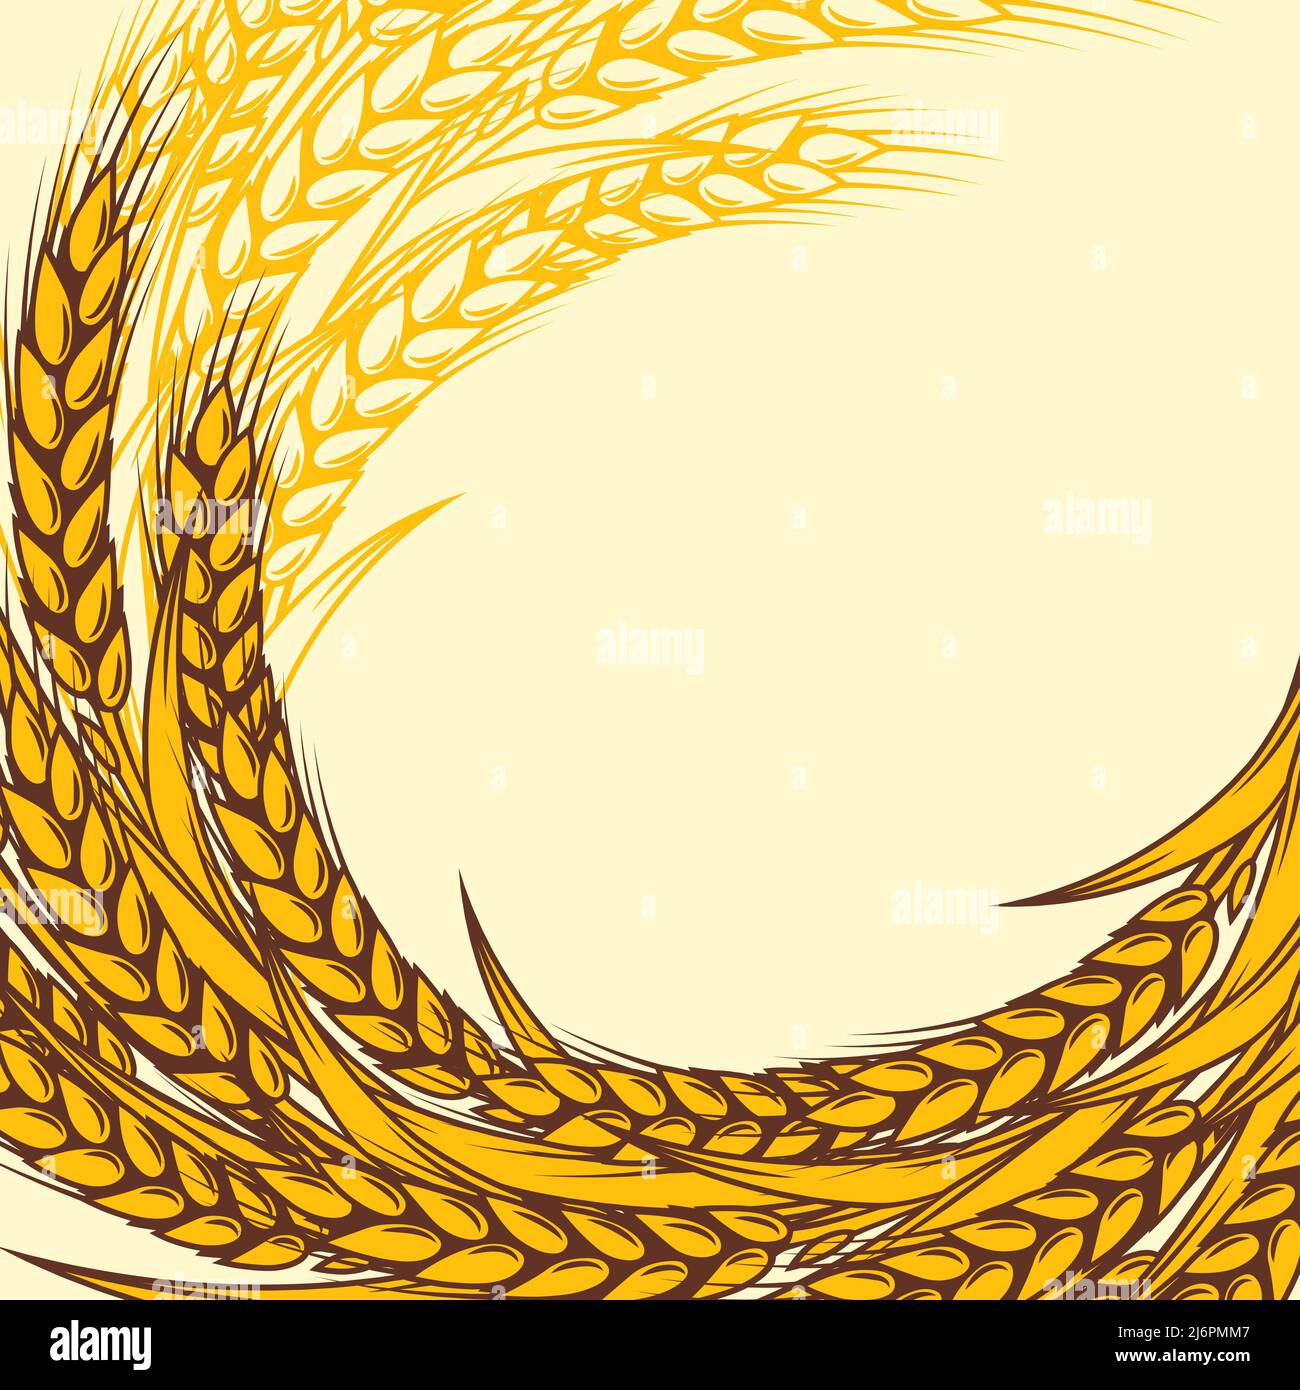 Arrière-plan avec le blé. Image agricole avec des oreilles dorées naturelles d'orge ou de seigle. Illustration de Vecteur